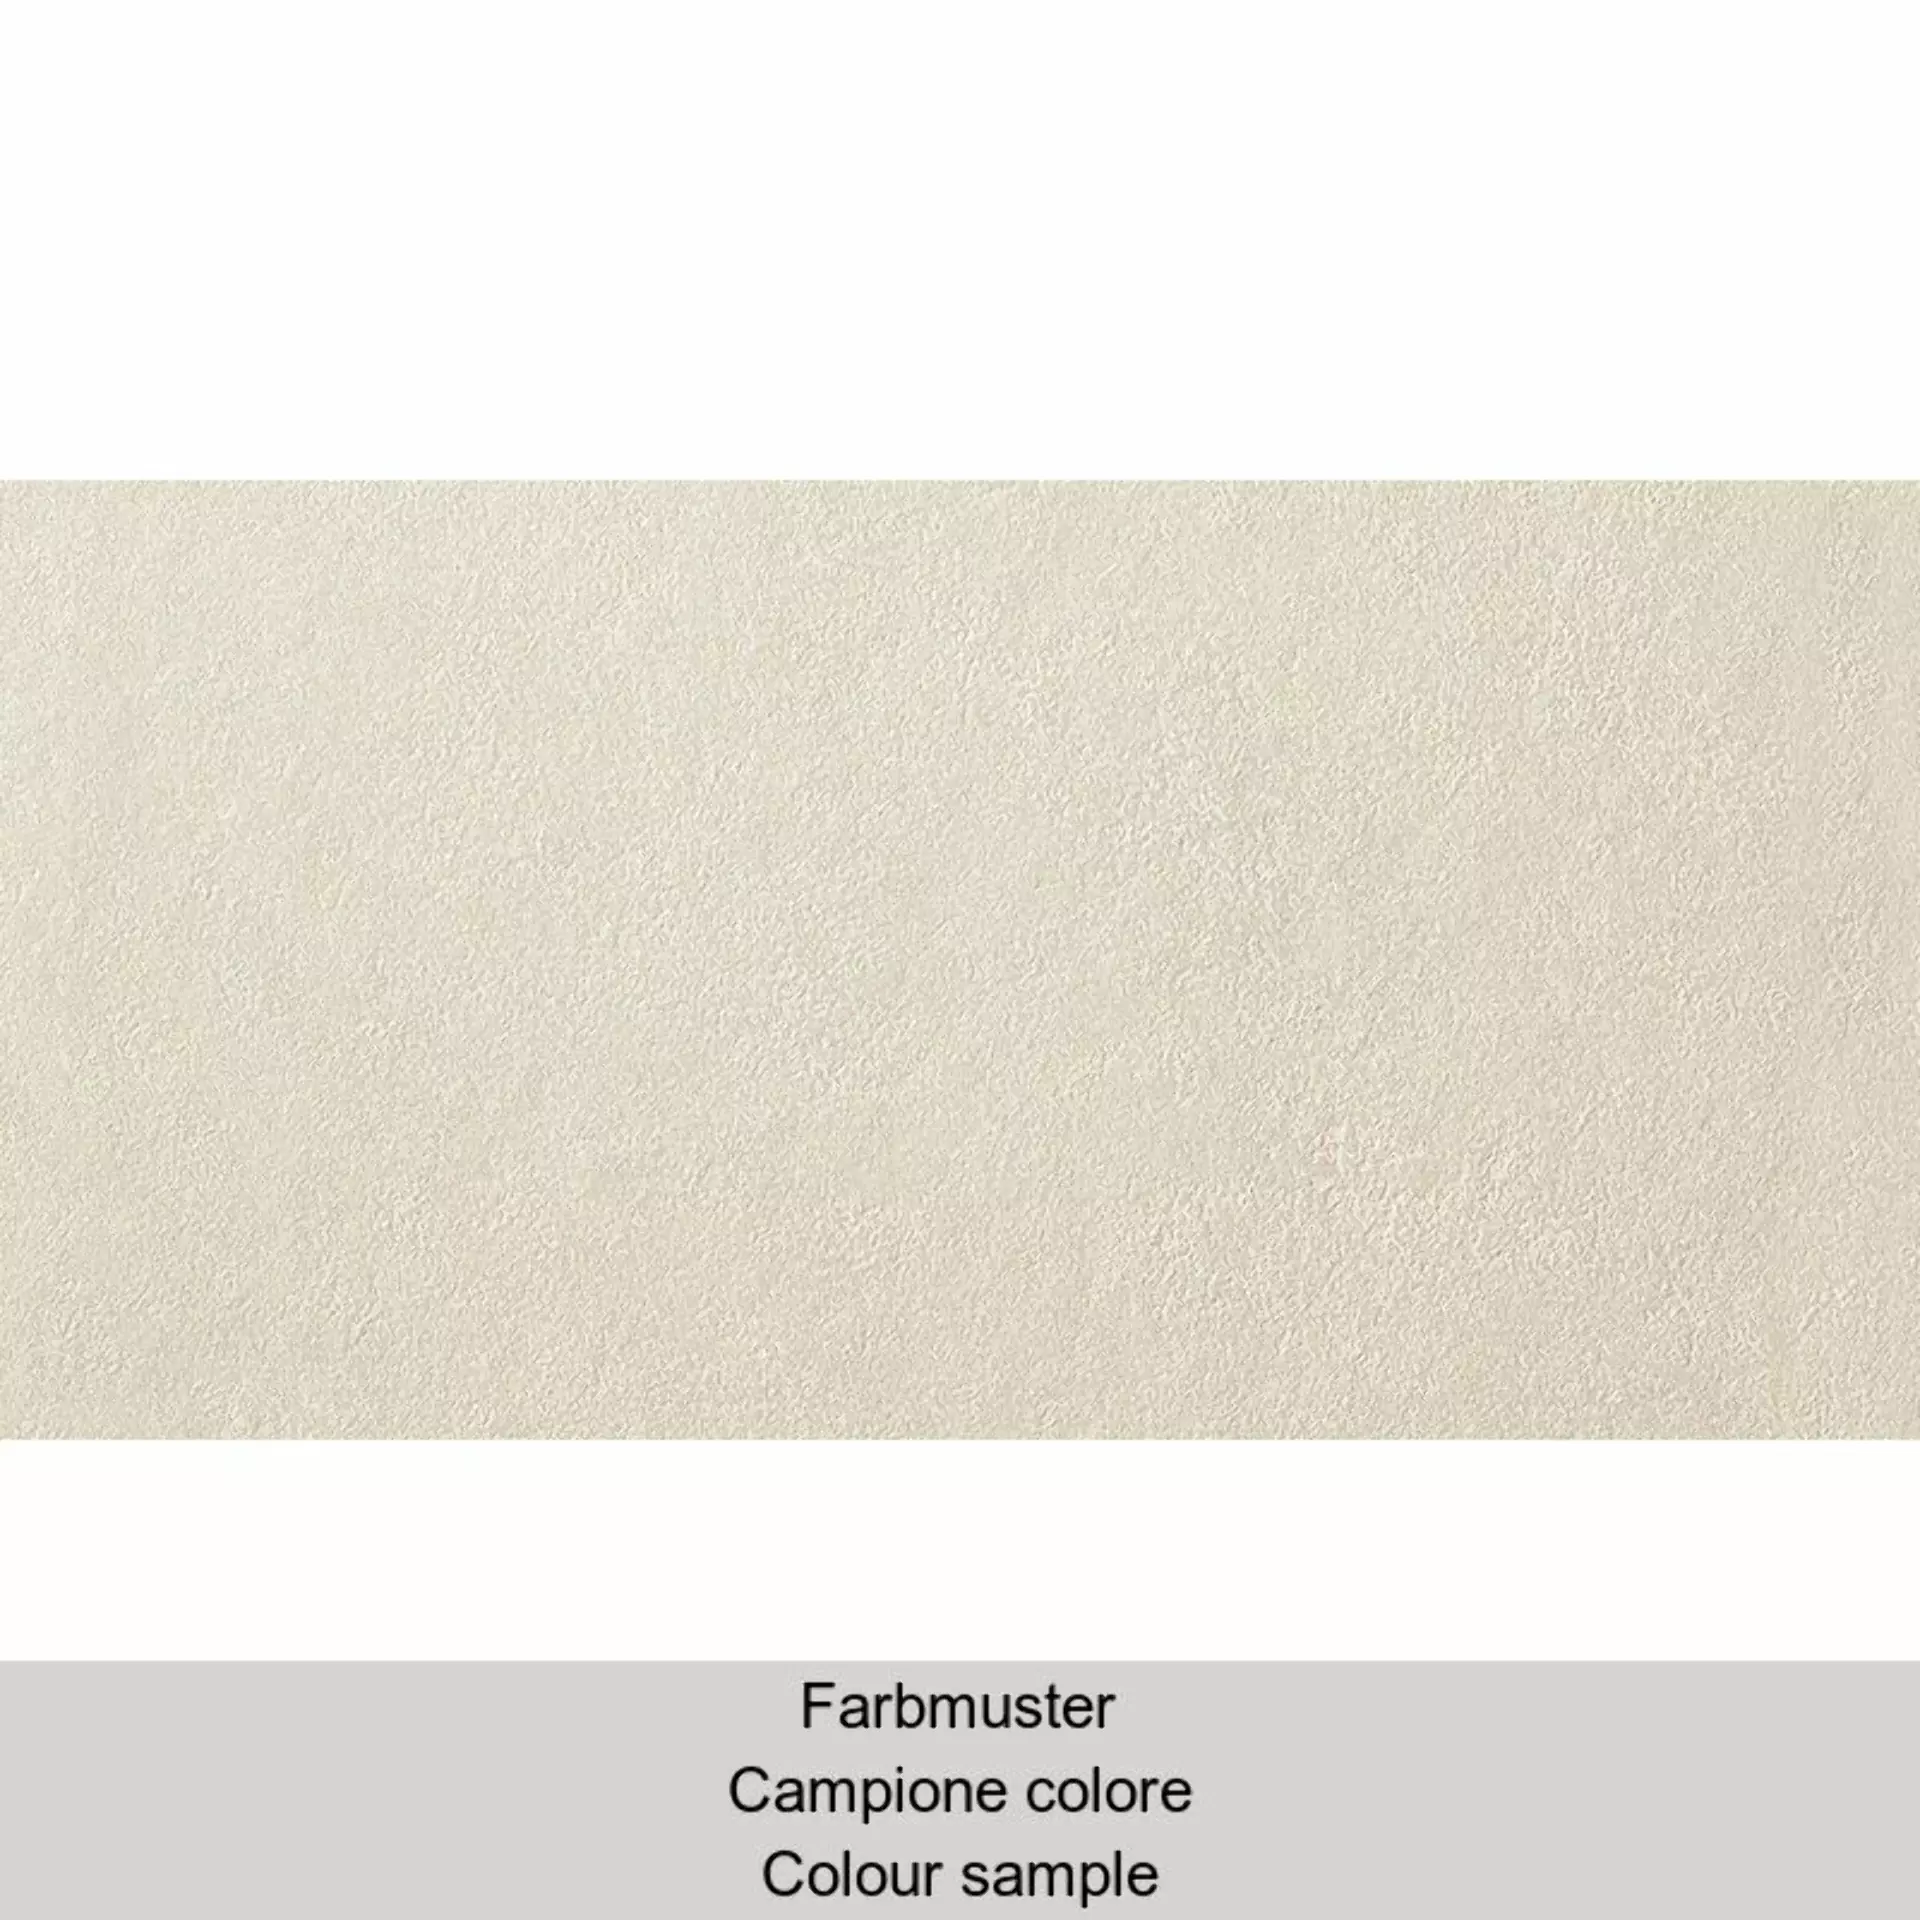 Casalgrande Spazio Beige Naturale – Matt 3790169 30x60cm rektifiziert 10mm